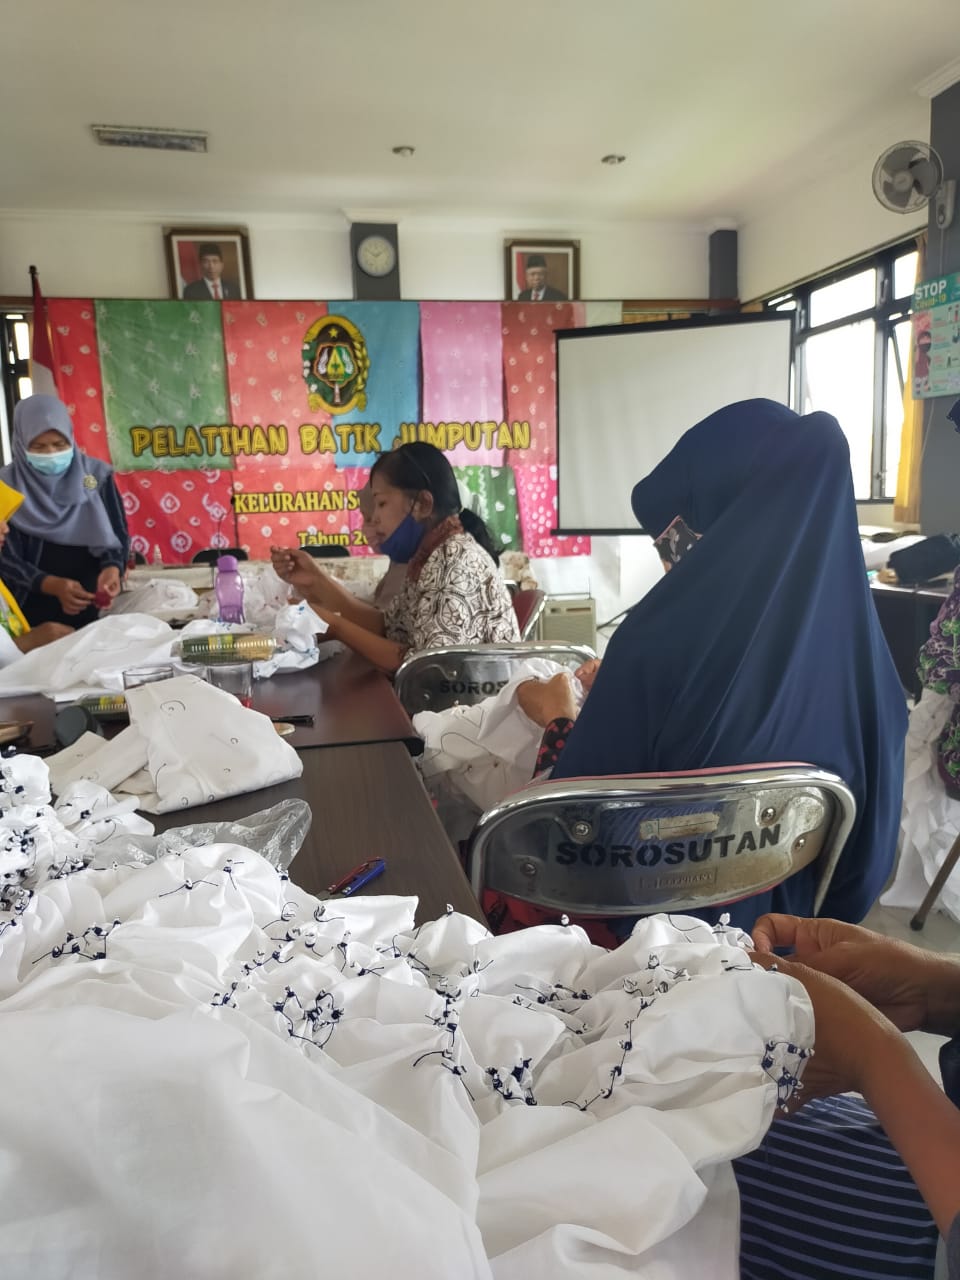 Pelatihan Batik Jumputan Sesi 2 di Kelurahan Sorosutan